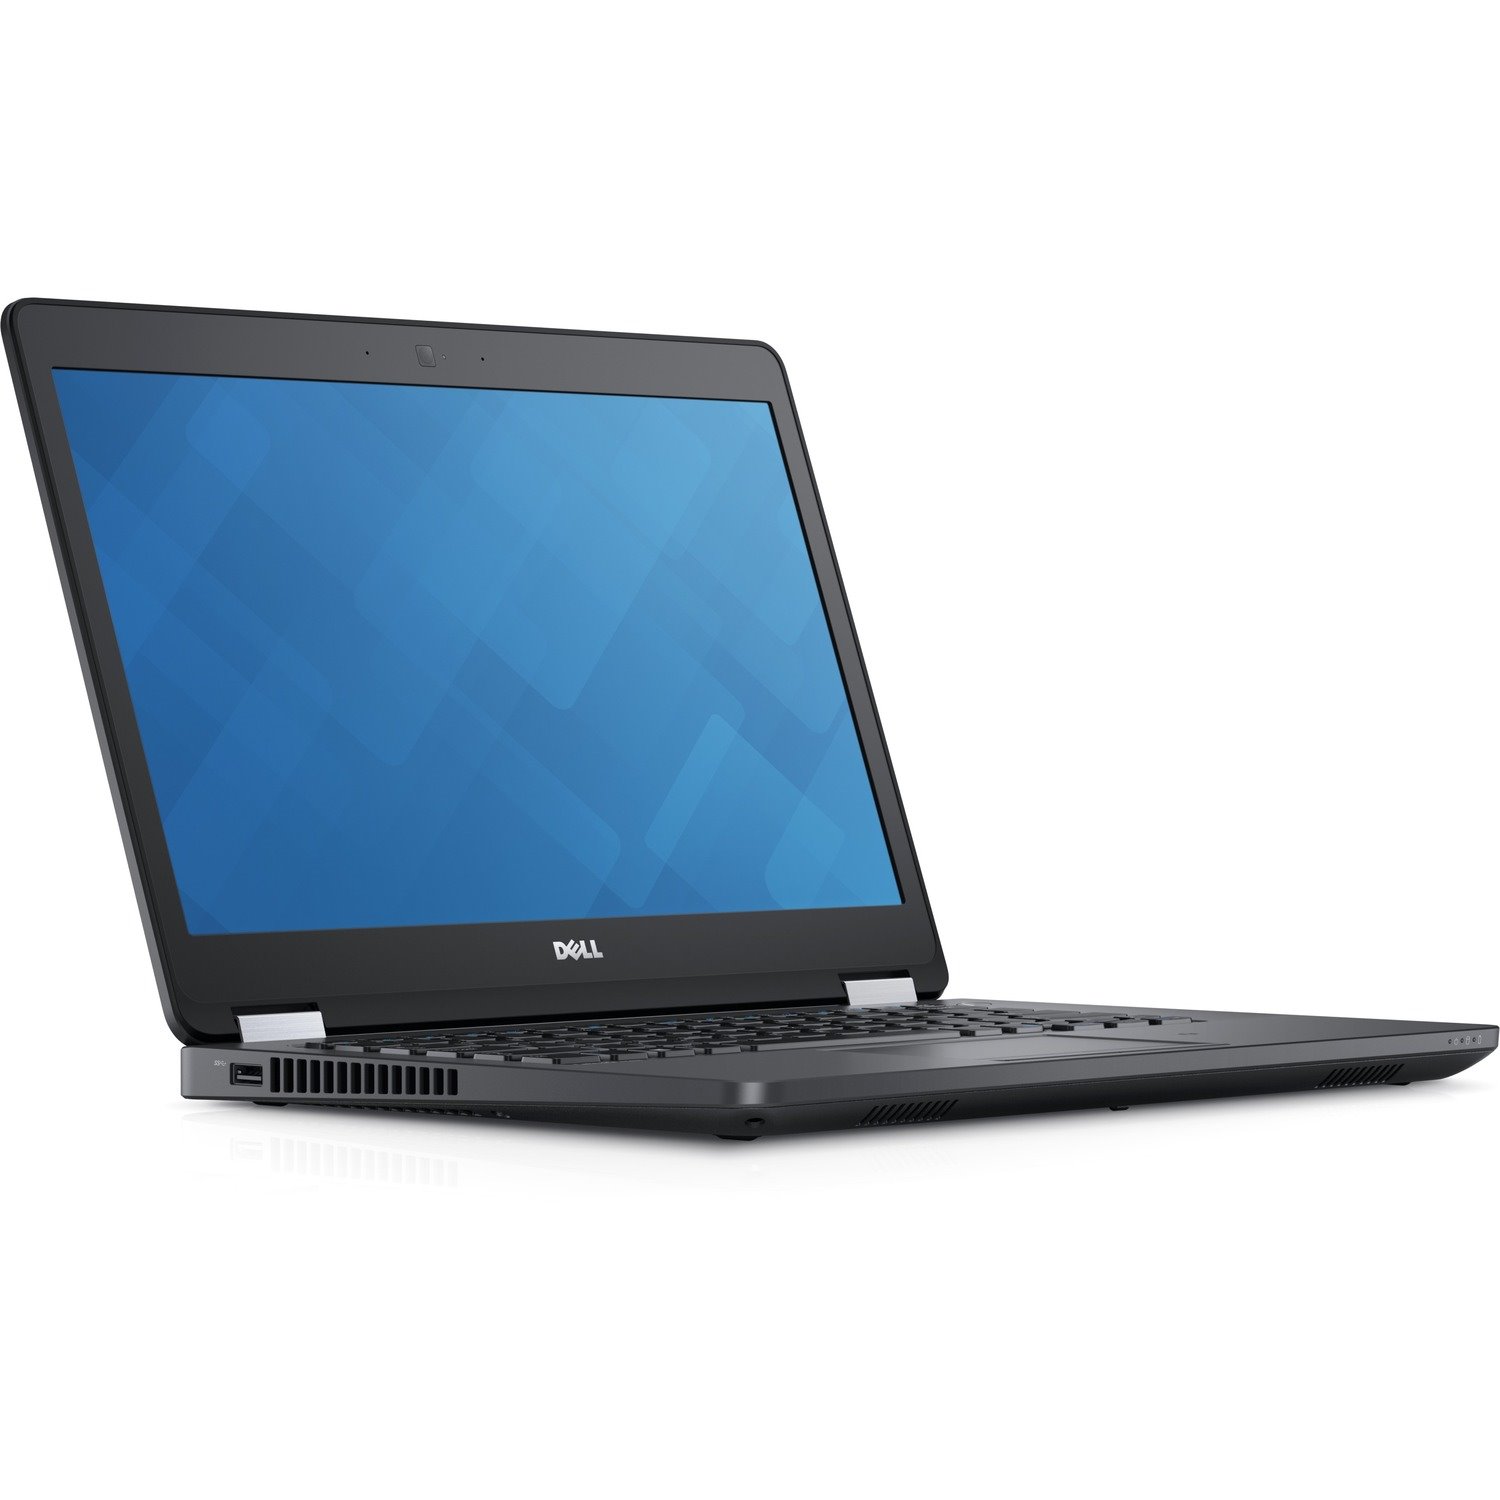 Dell Latitude 14 5000 E5470 35.6 cm (14") Notebook - Intel Core i7 6th Gen i7-6820HQ Quad-core (4 Core) 2.70 GHz - 8 GB Total RAM - 1 TB HDD